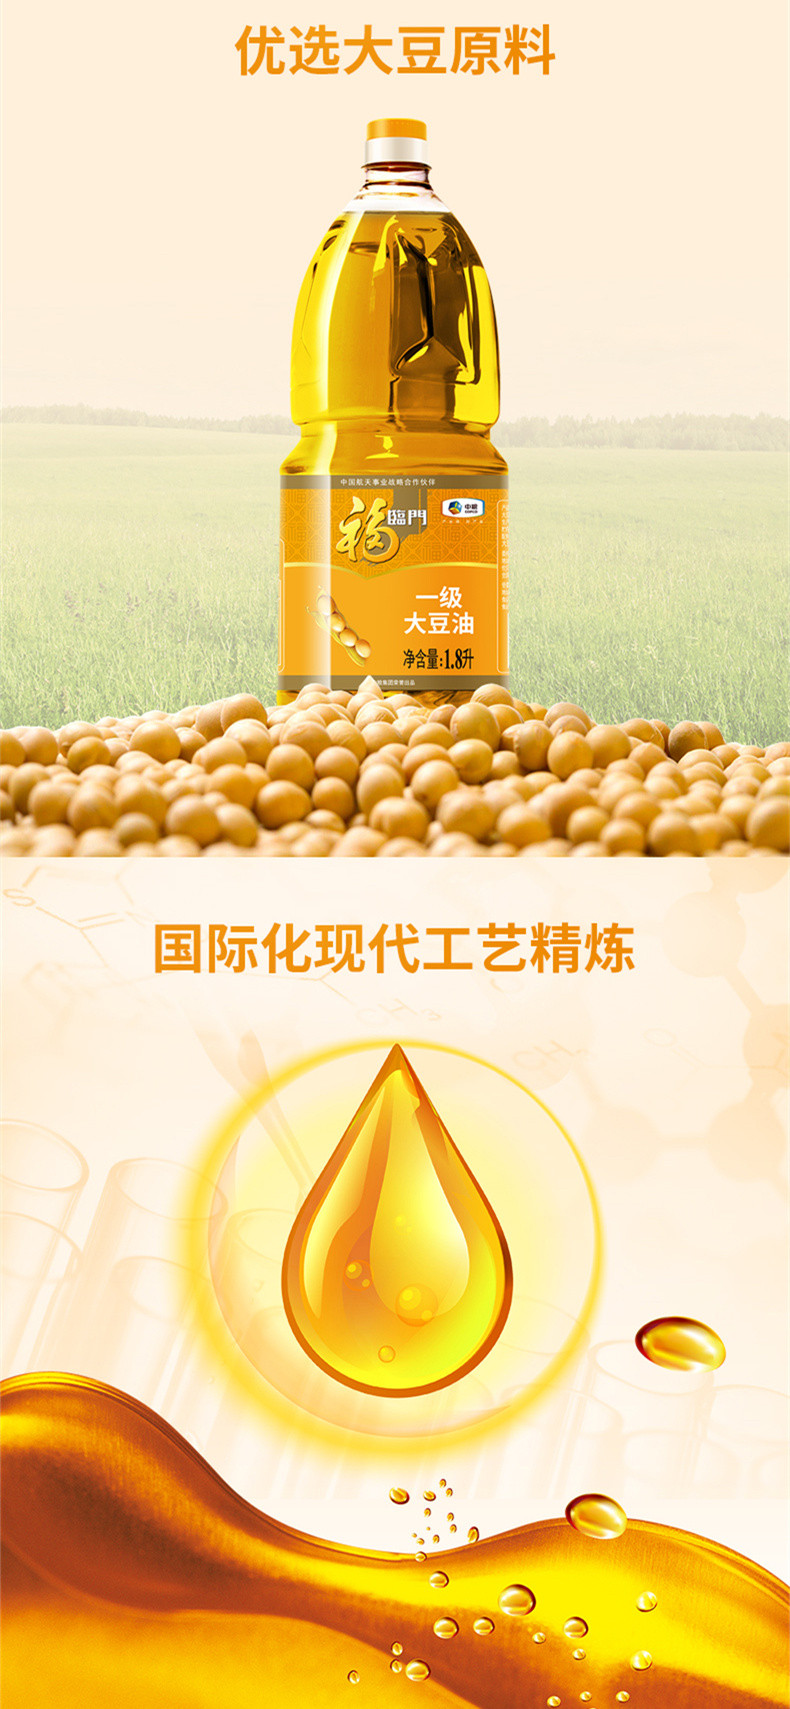 福临门一级大豆油1.8L福临门大豆油桶装食用油健康炒菜正品